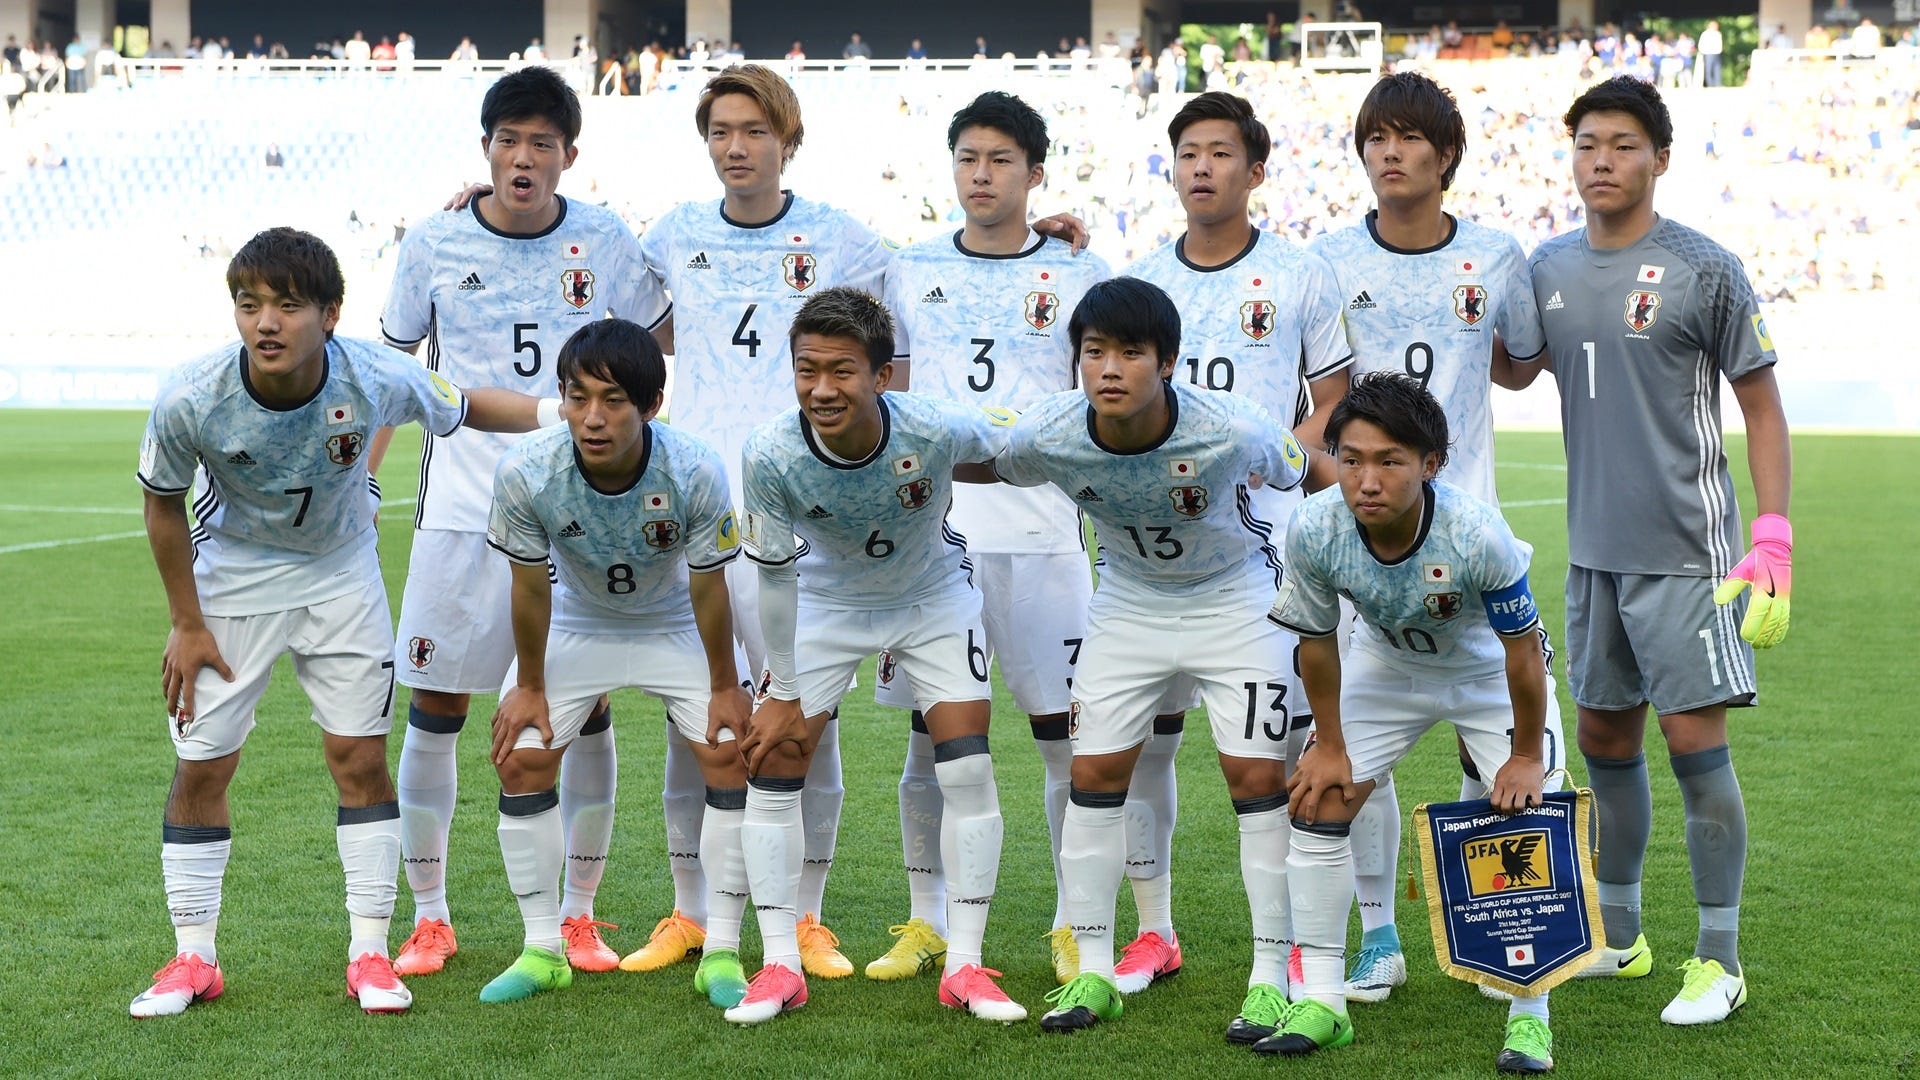 日本はb組3連勝のベネズエラと対戦 Uw杯ベスト16出揃う 欧州決勝の再戦も Goal Com 日本